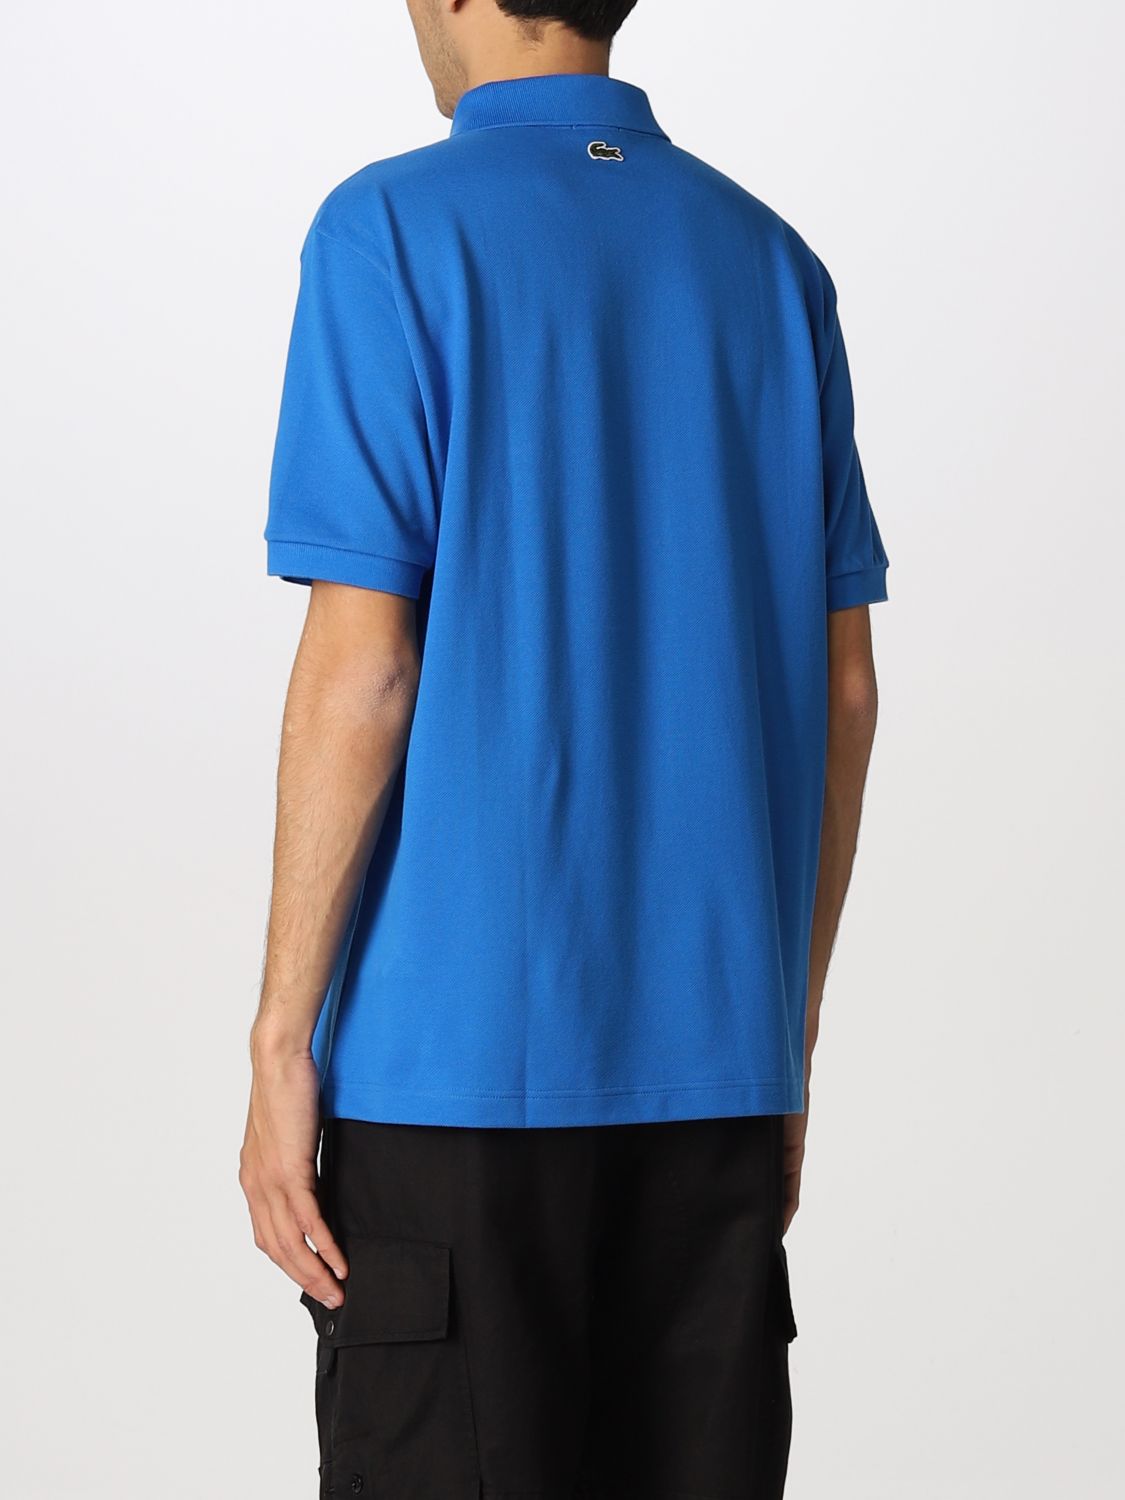 Polo shirt Lacoste L!Ve: Polo shirt men Lacoste L!ve royal blue 2